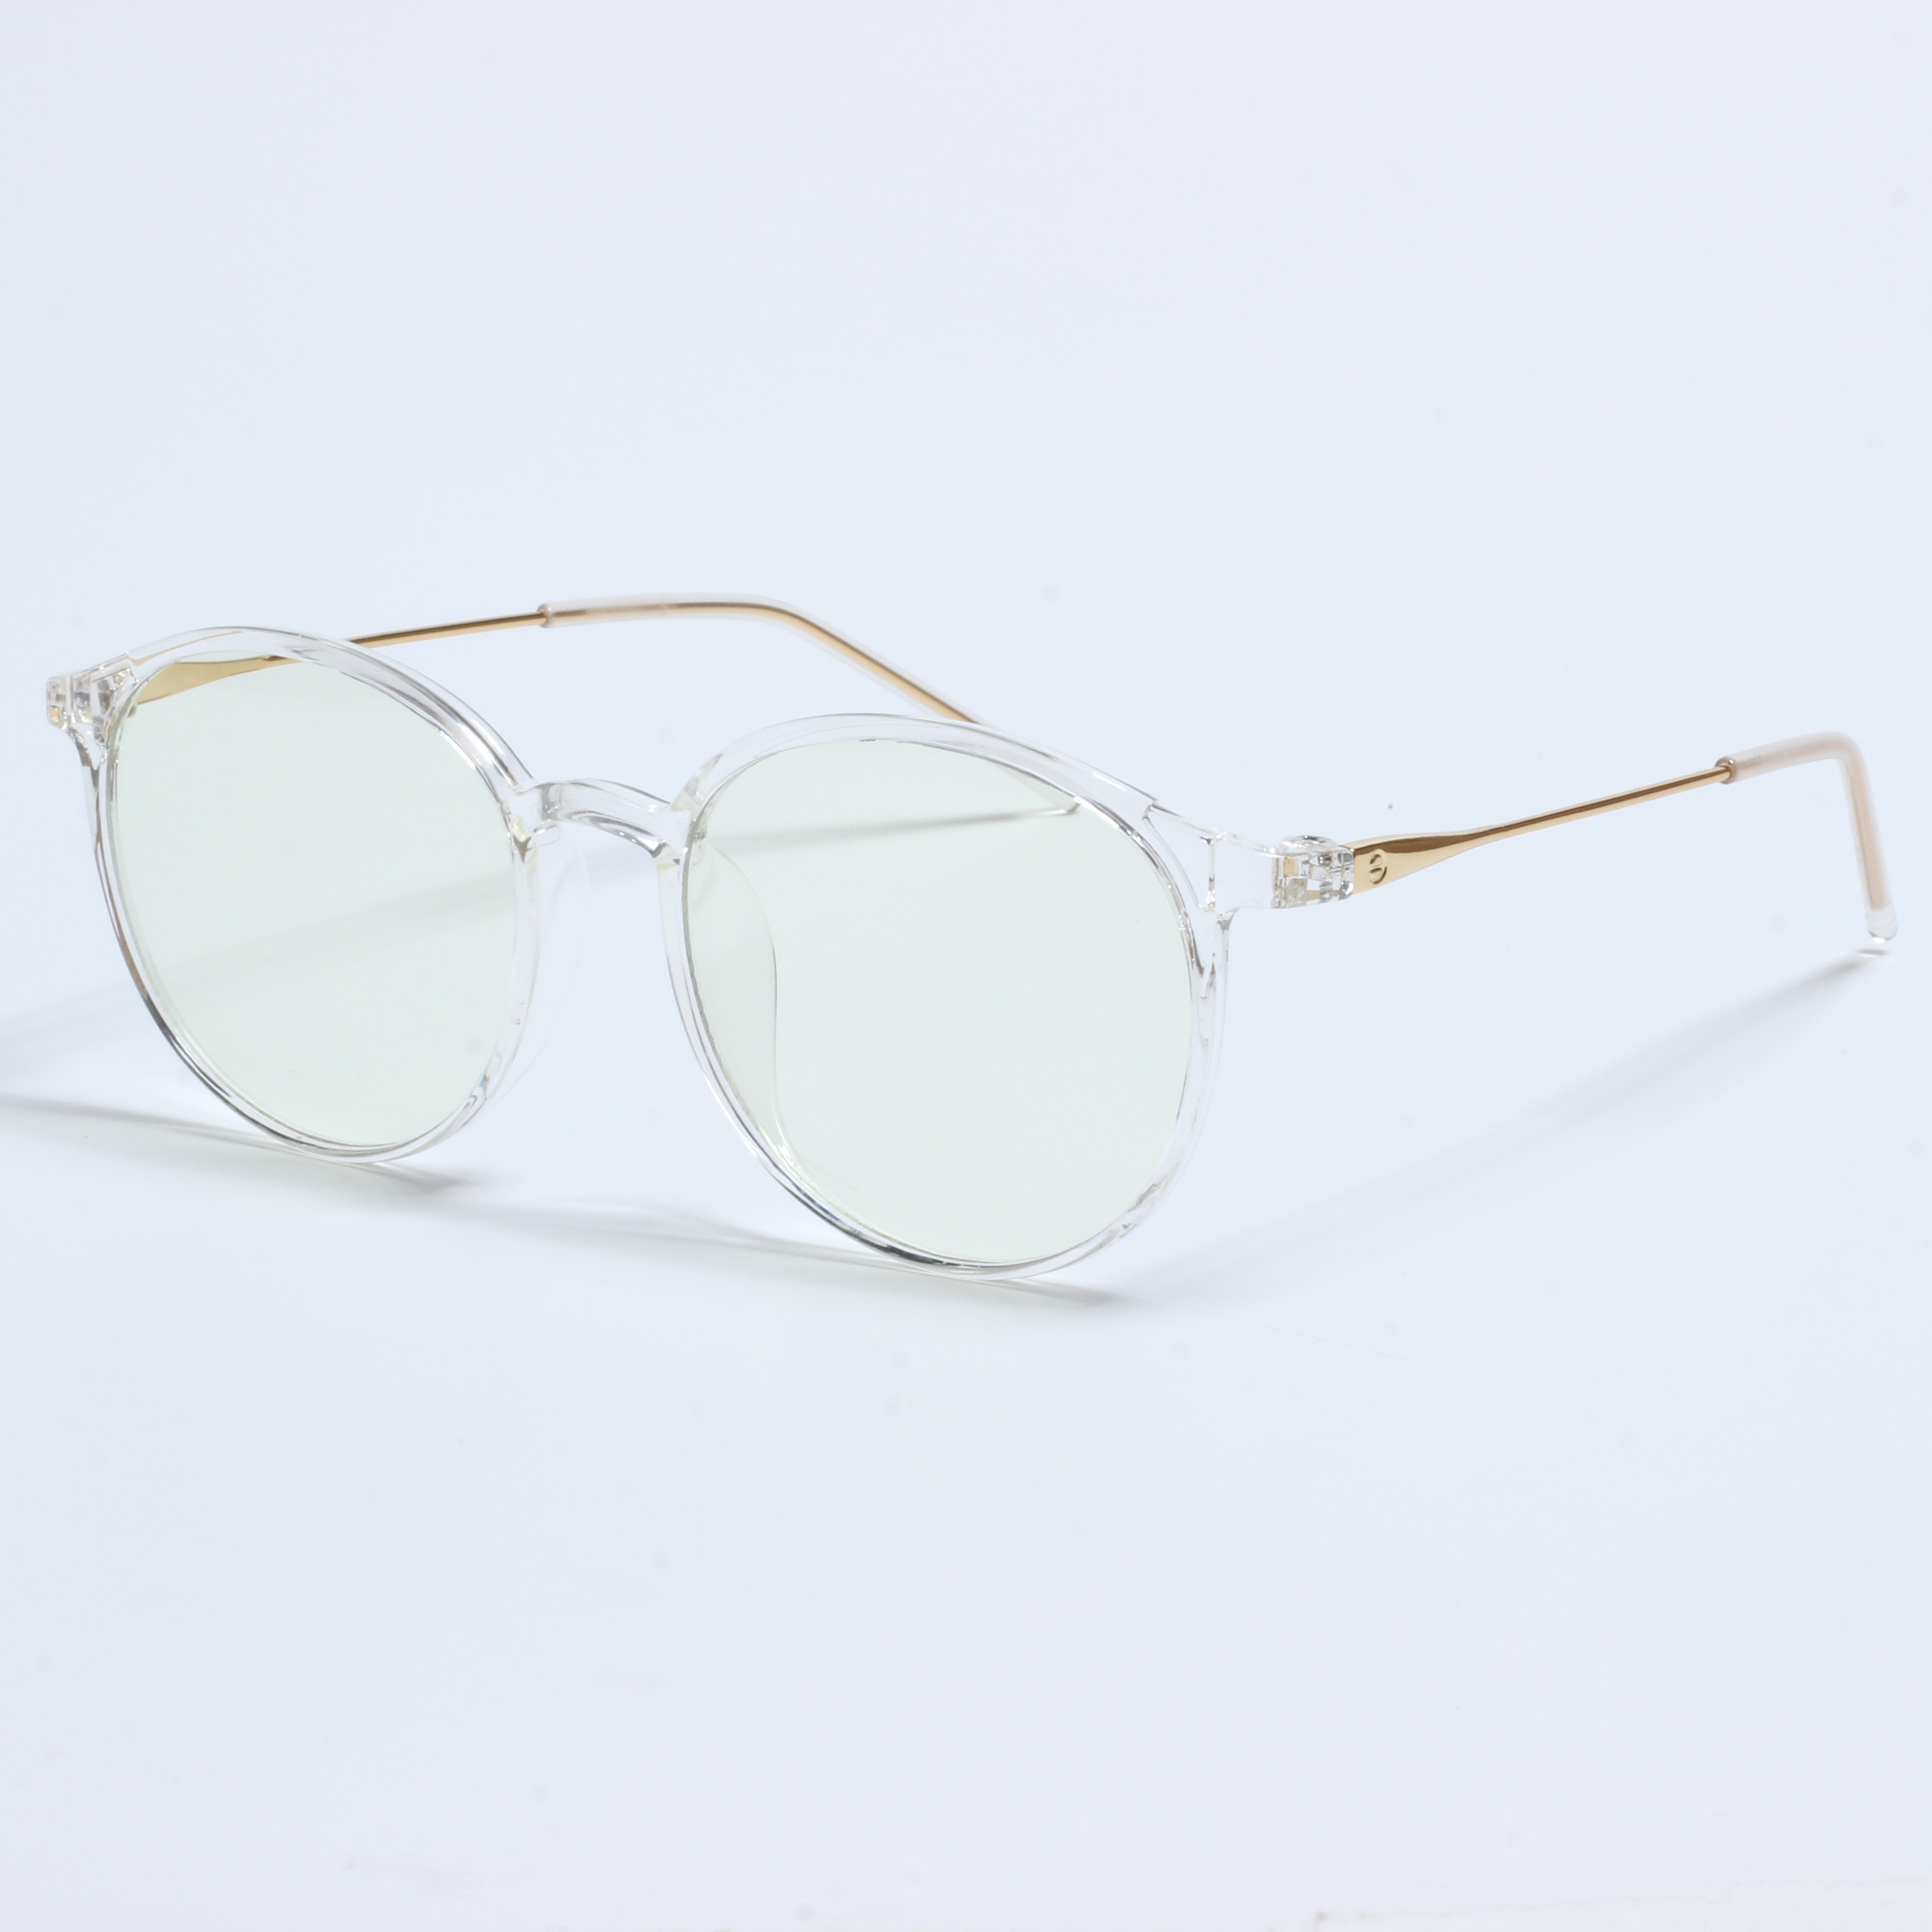 Groothandel brillenframe TR optyske frames (3)